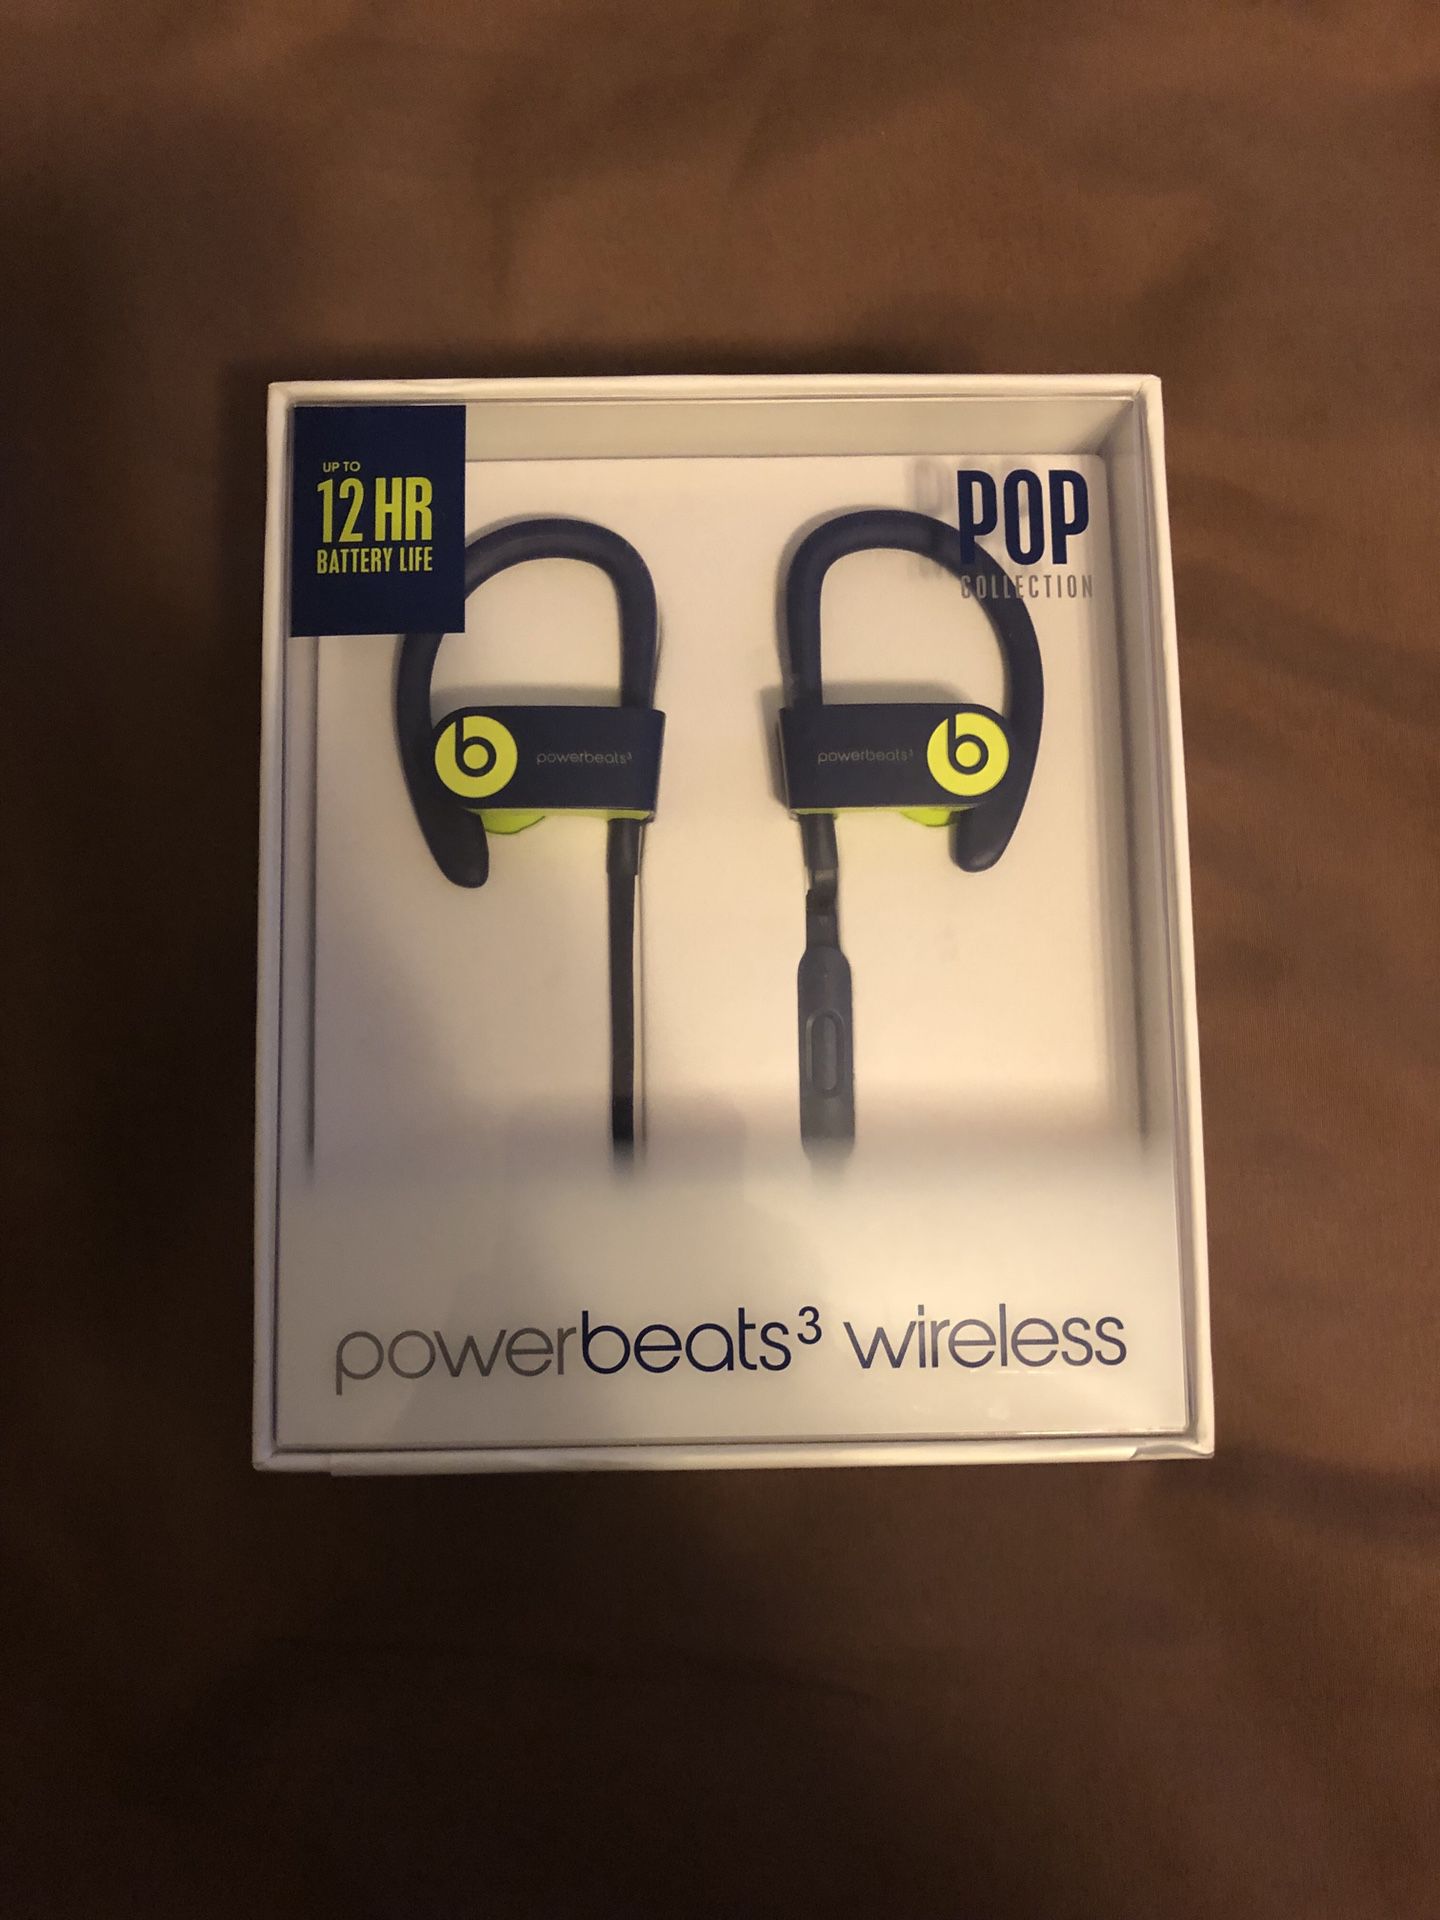 Beats by Dre Powerbeats 3 wireless earphones